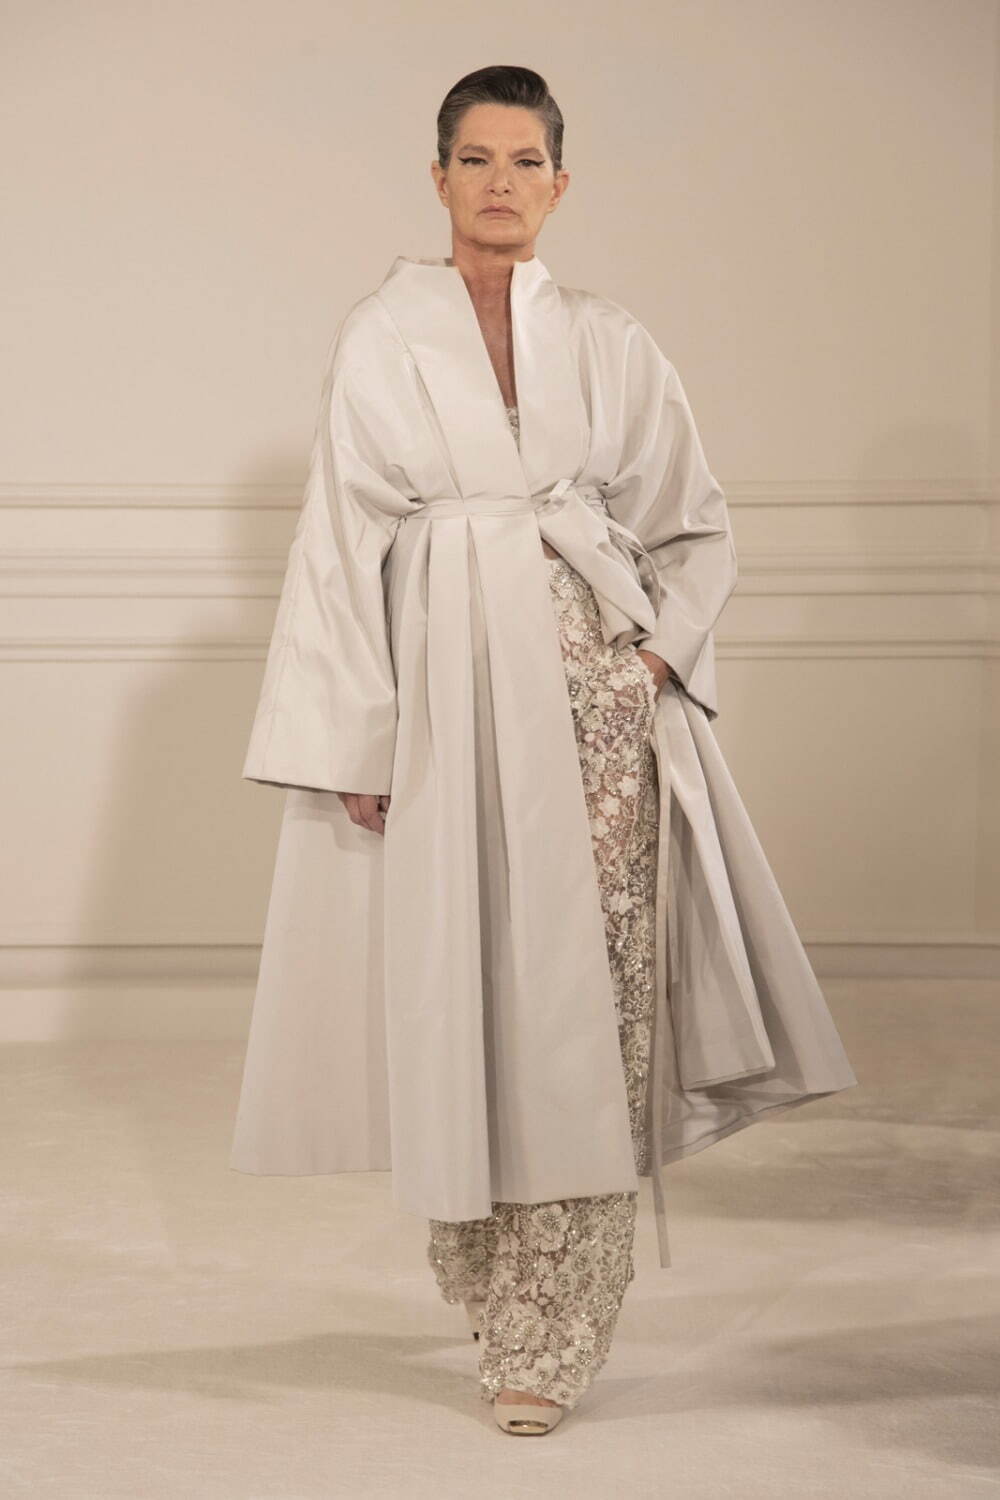 ヴァレンティノ オートクチュール(VALENTINO Haute Couture ) 2022年春夏ウィメンズ&メンズコレクション  - 写真20